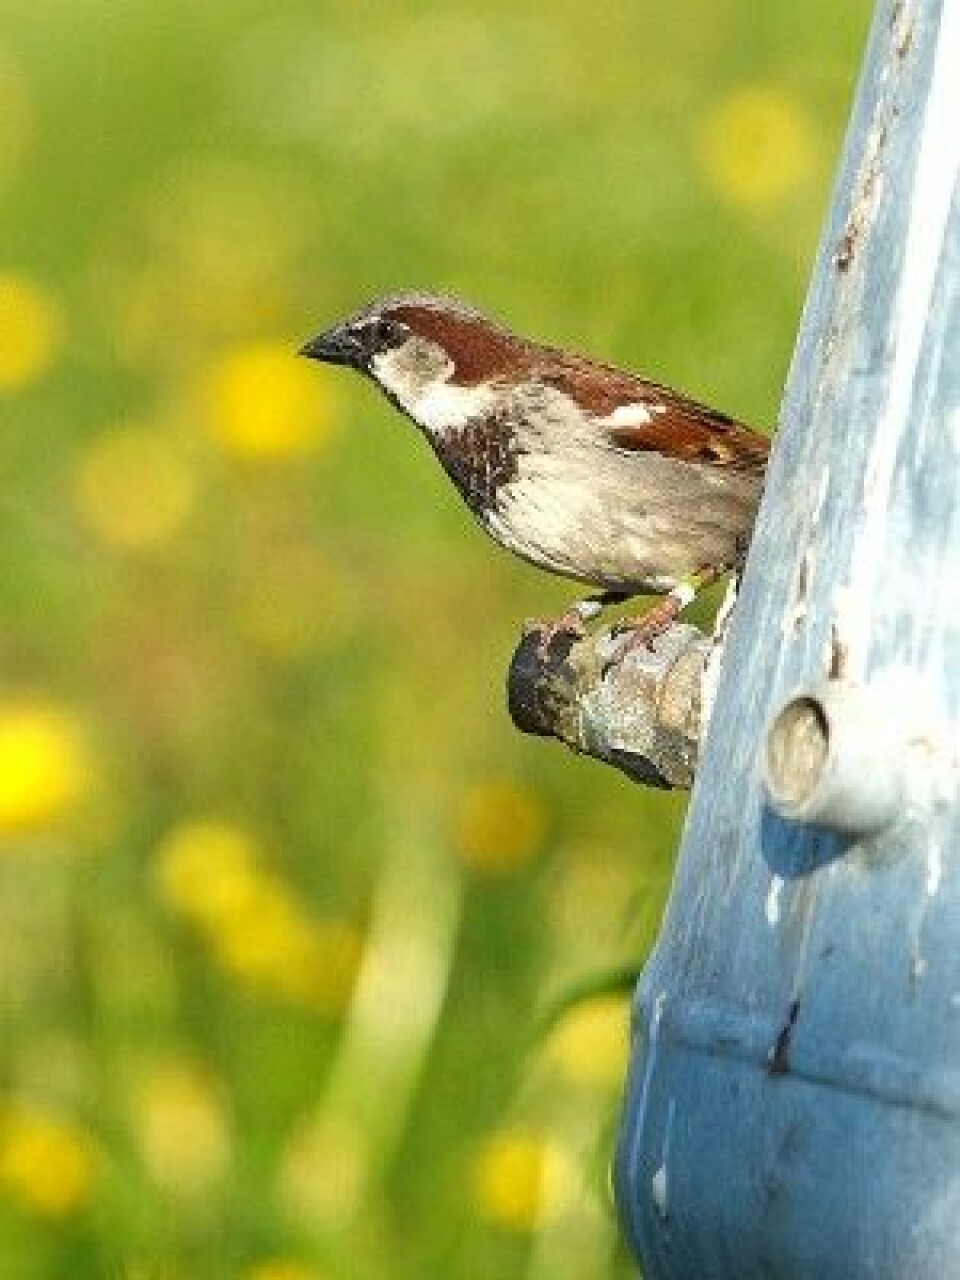 Det er første gang i hele verden at noen har flyttet fugl for å gjøre kunstig seleksjon i en vill bestand. (Foto: Henrik Jensen, NTNU)